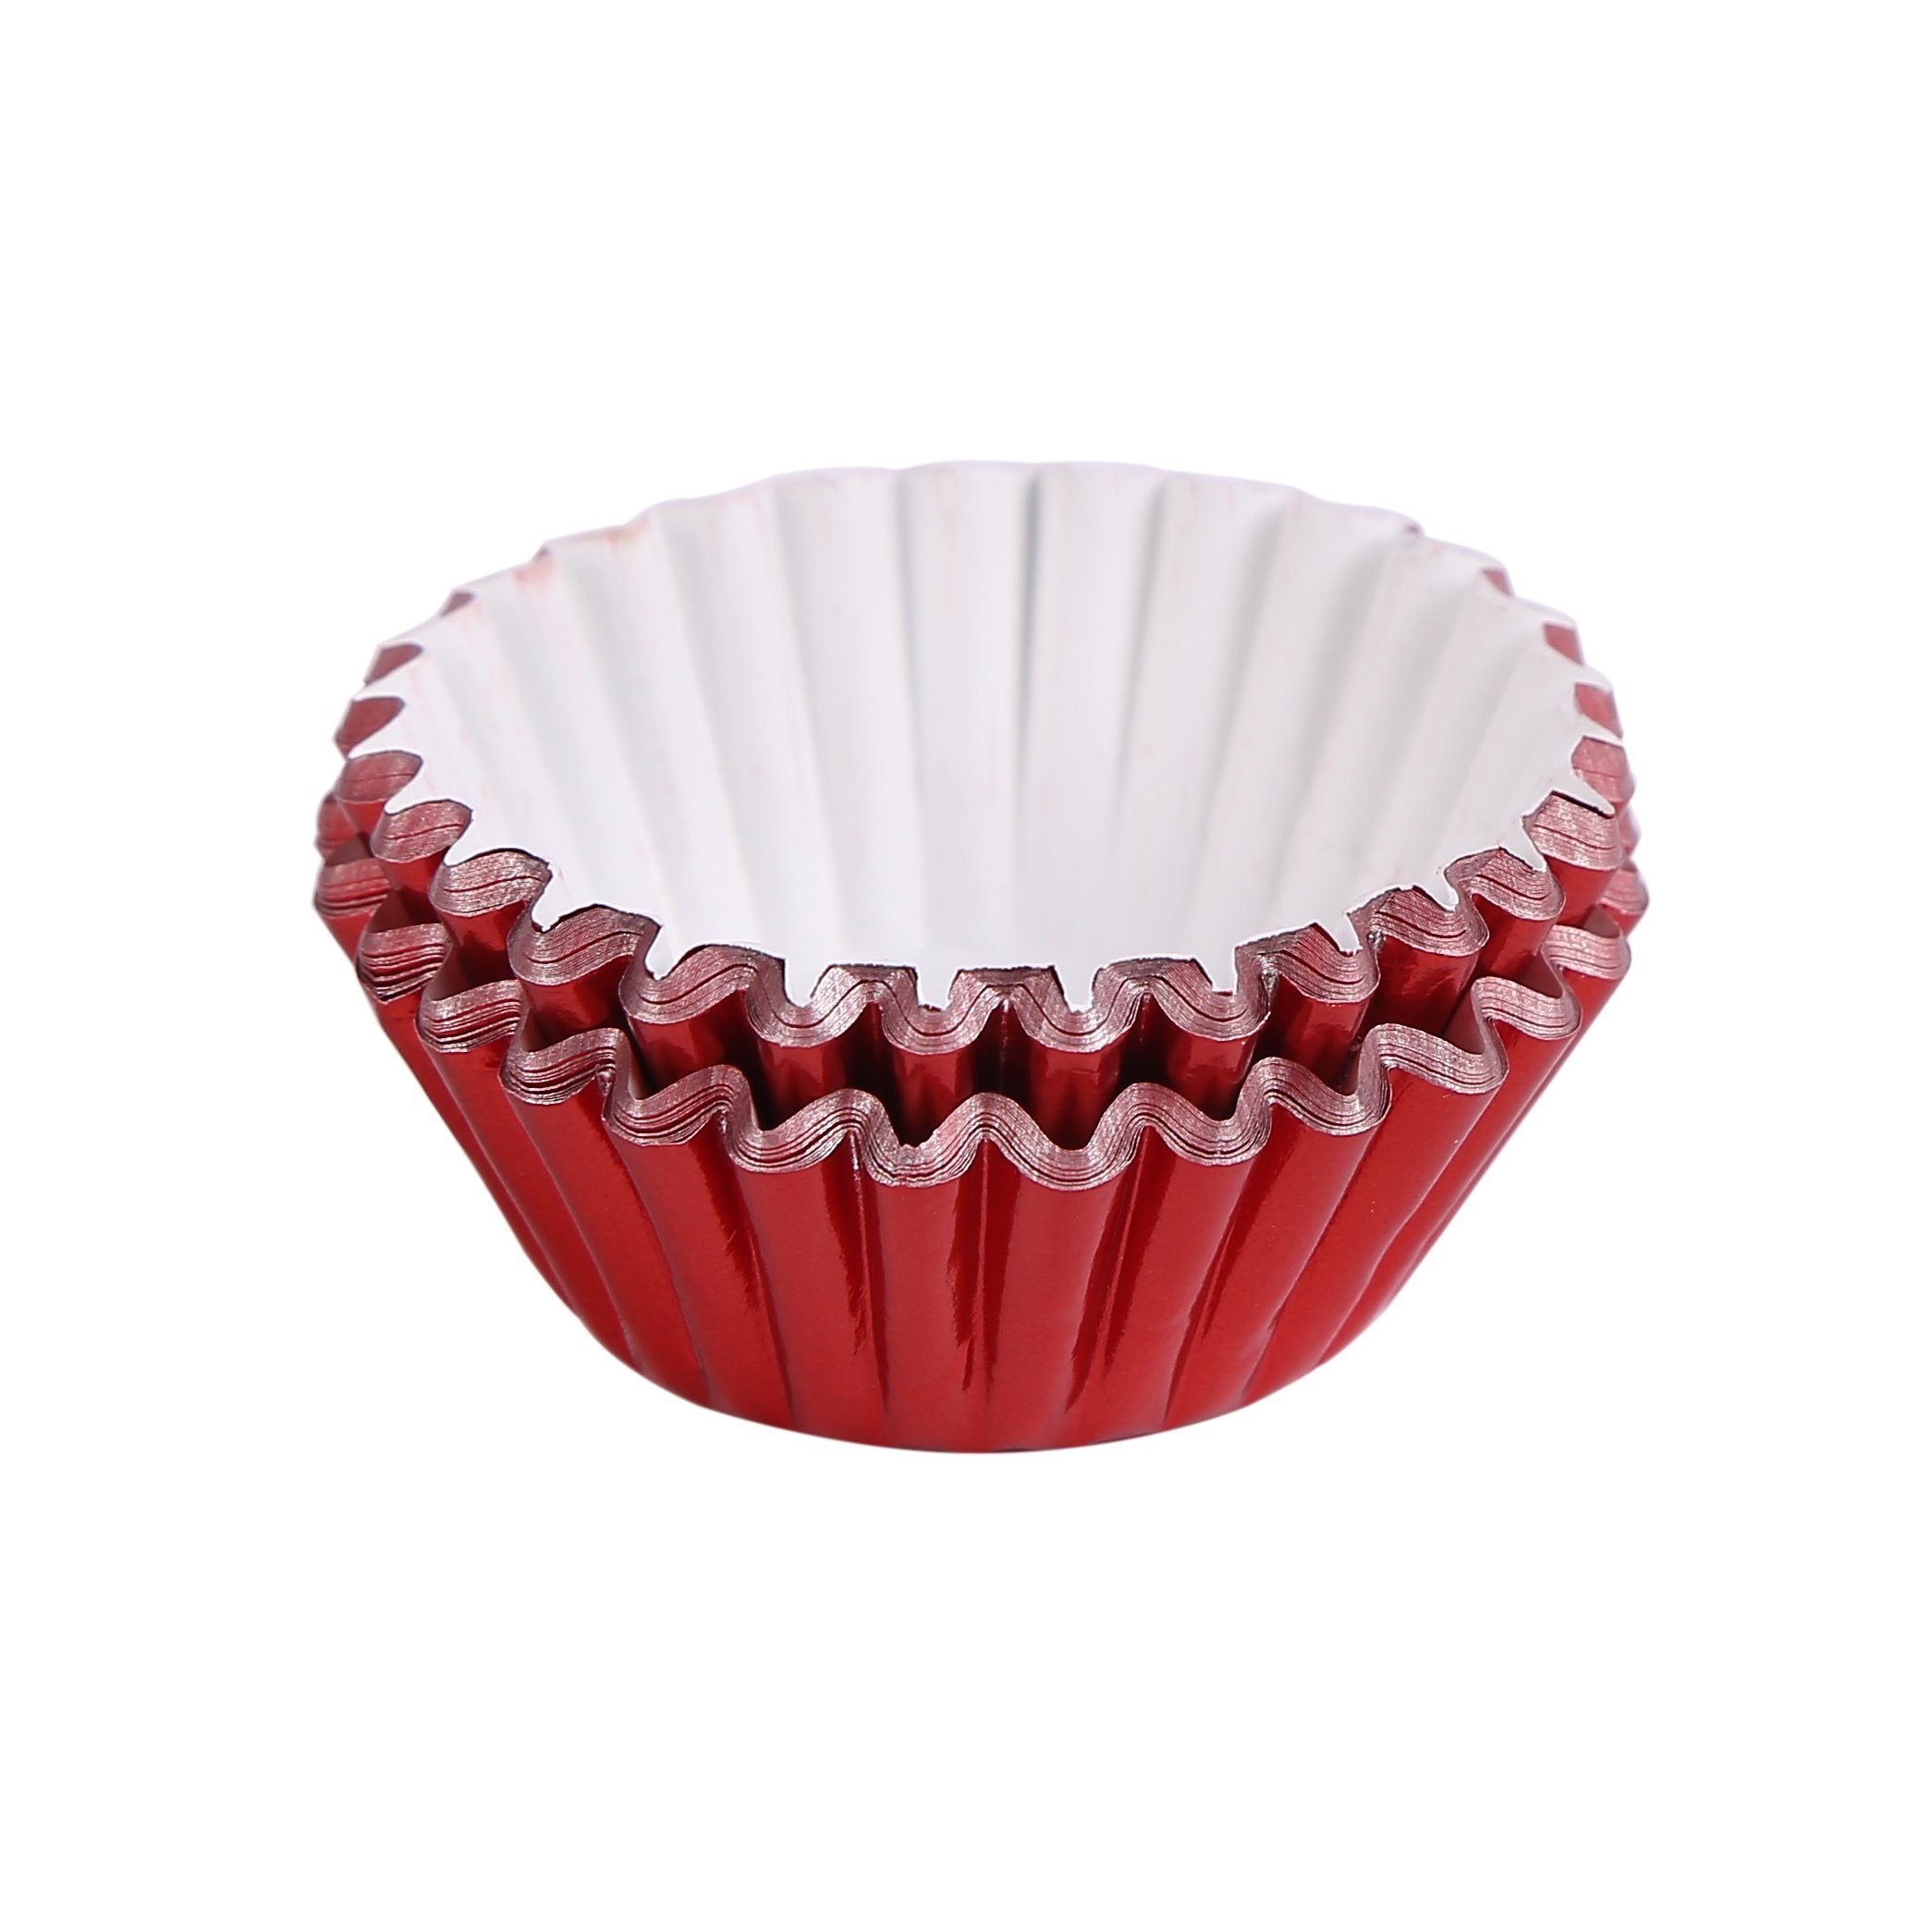 Miss Bakery's House Muffinform Mini Muffinförmchen folienbeschichtet, (Rot 120-tlg), kleine Metallic-Papierbackförmchen für Mini-Cupcakes und Minimuffins | Muffinformen